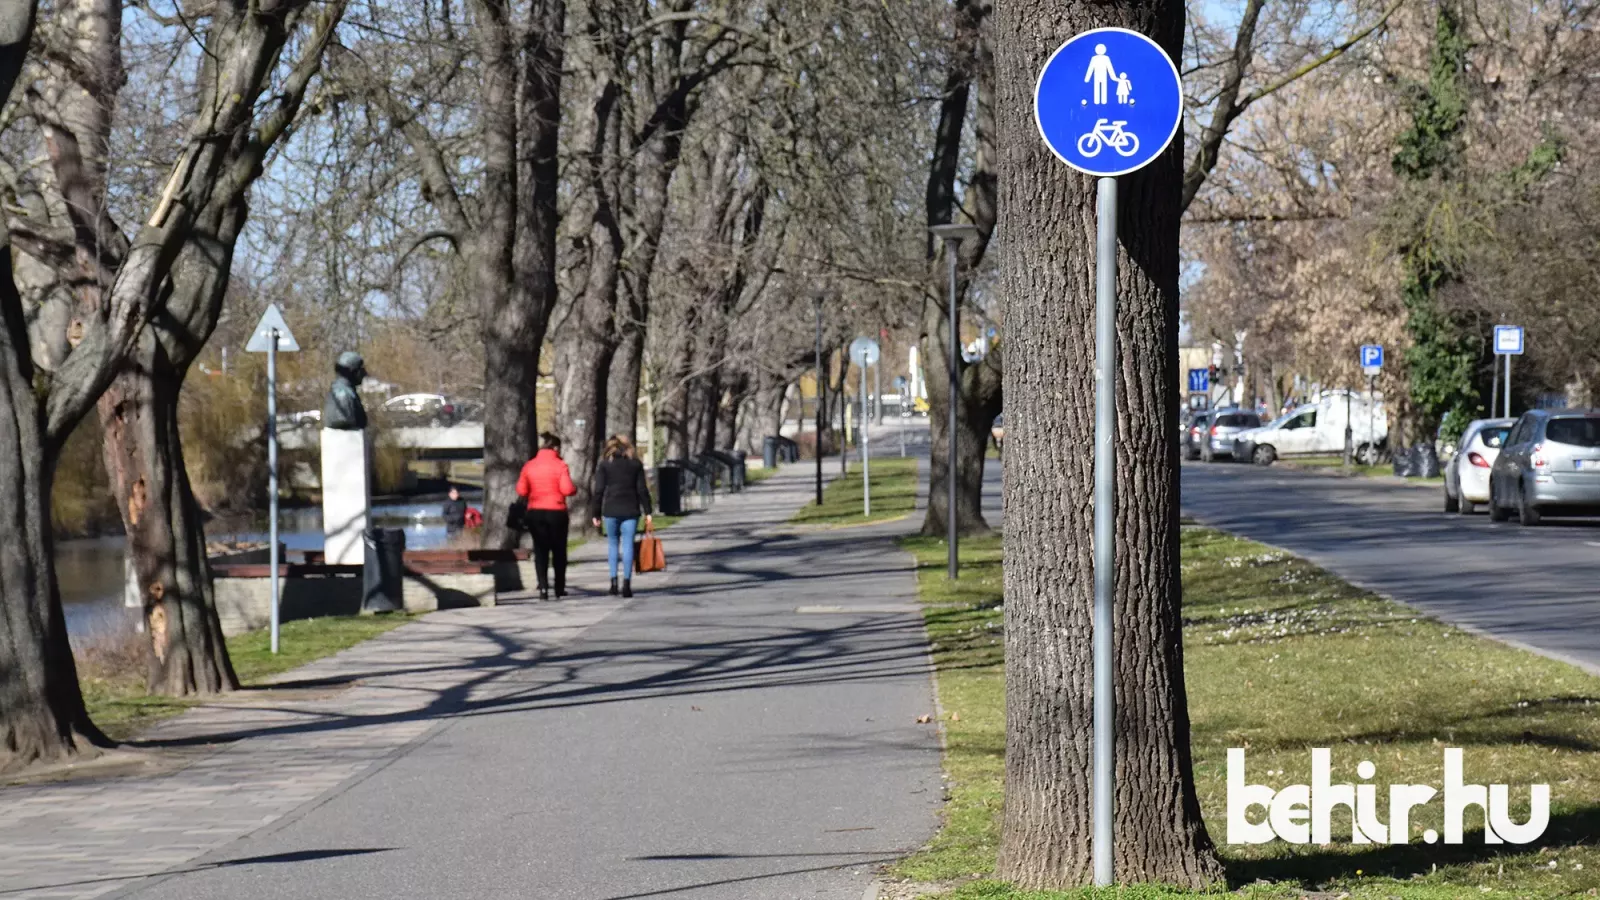 Az Árpád sor szoborsétány felöli szakasza, ahol már a gyalog- és kerékpárút tábla ki van helyezve – Fotó behir.hu/Such Tamás